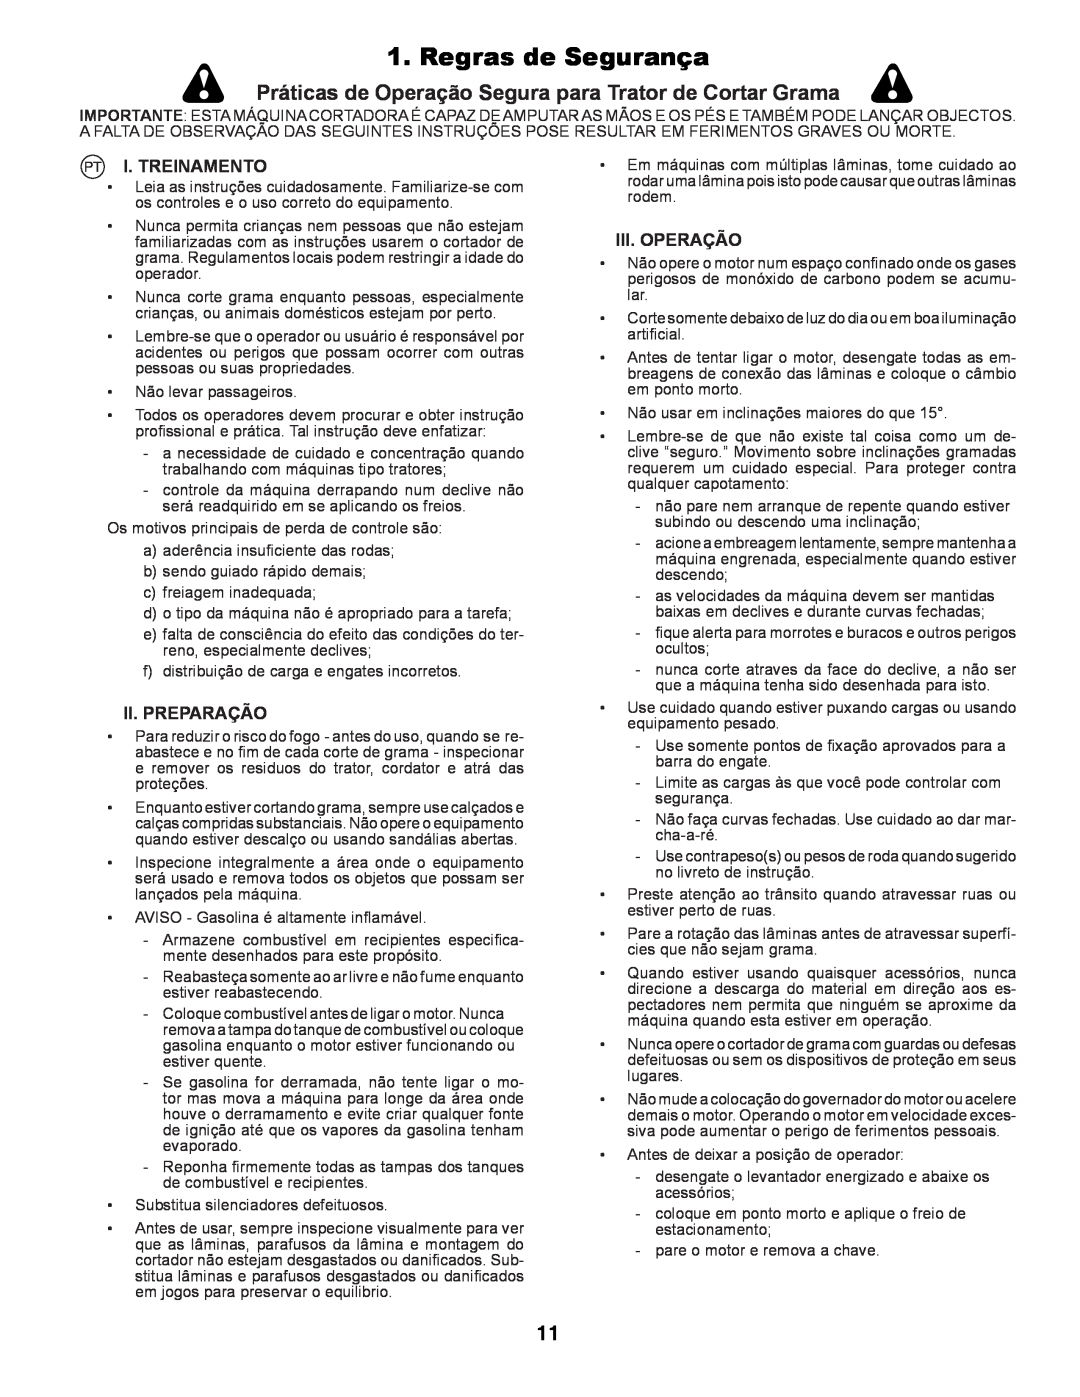 Partner Tech P145107 manual Regras de Segurança, Pt I. Treinamento, Ii. Preparação, Iii. Operação 